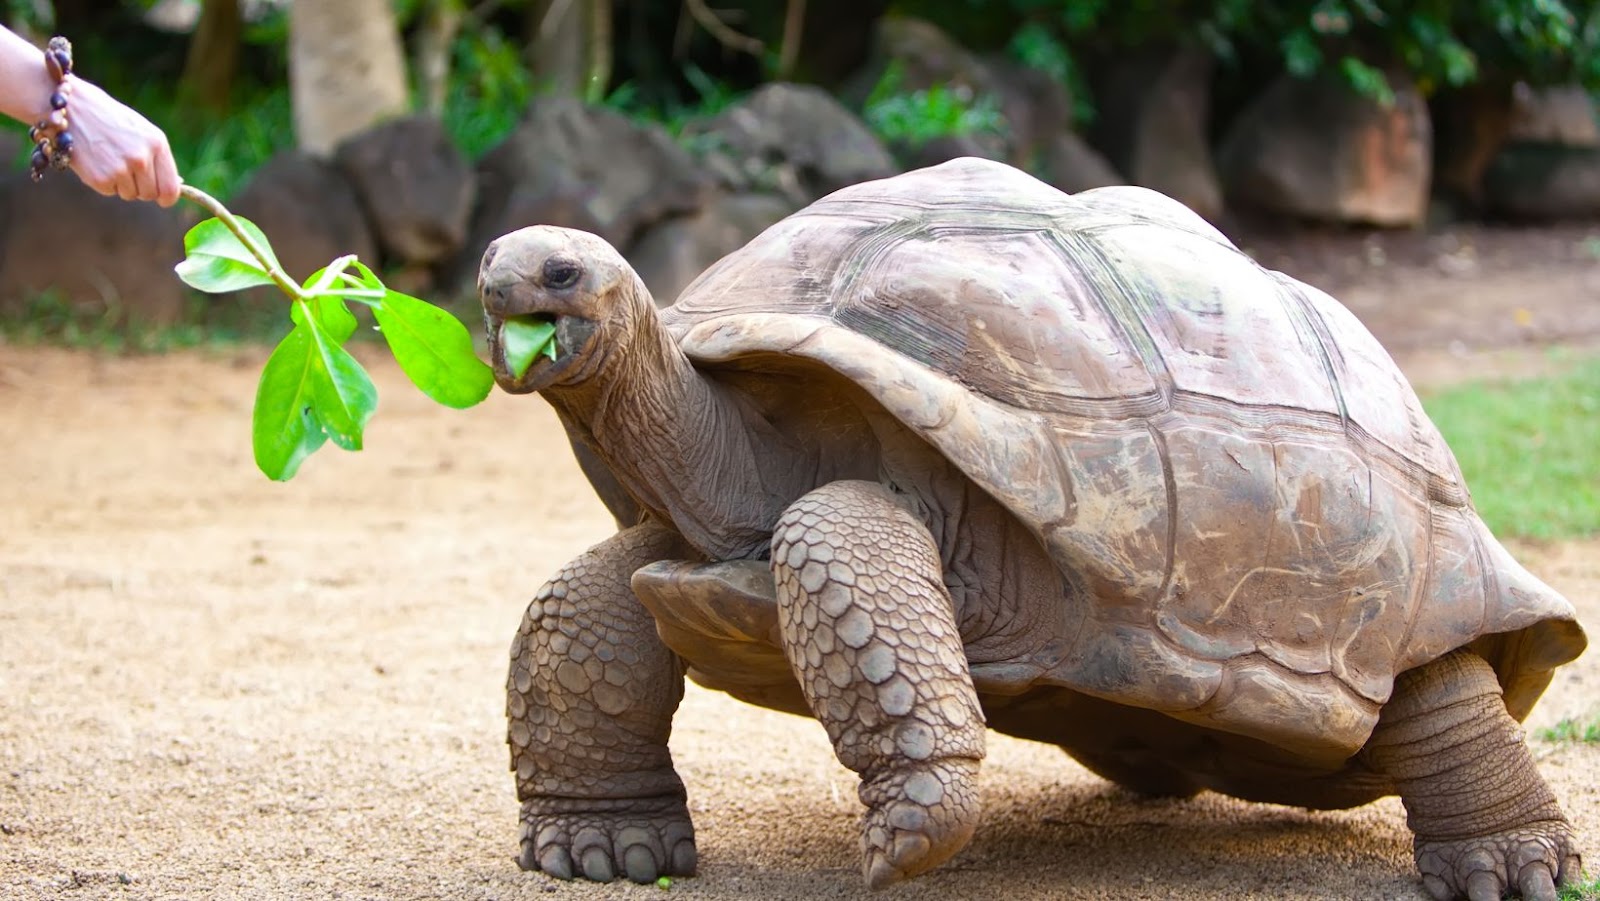 Tips For Feeding Tortoises Eat Spinach